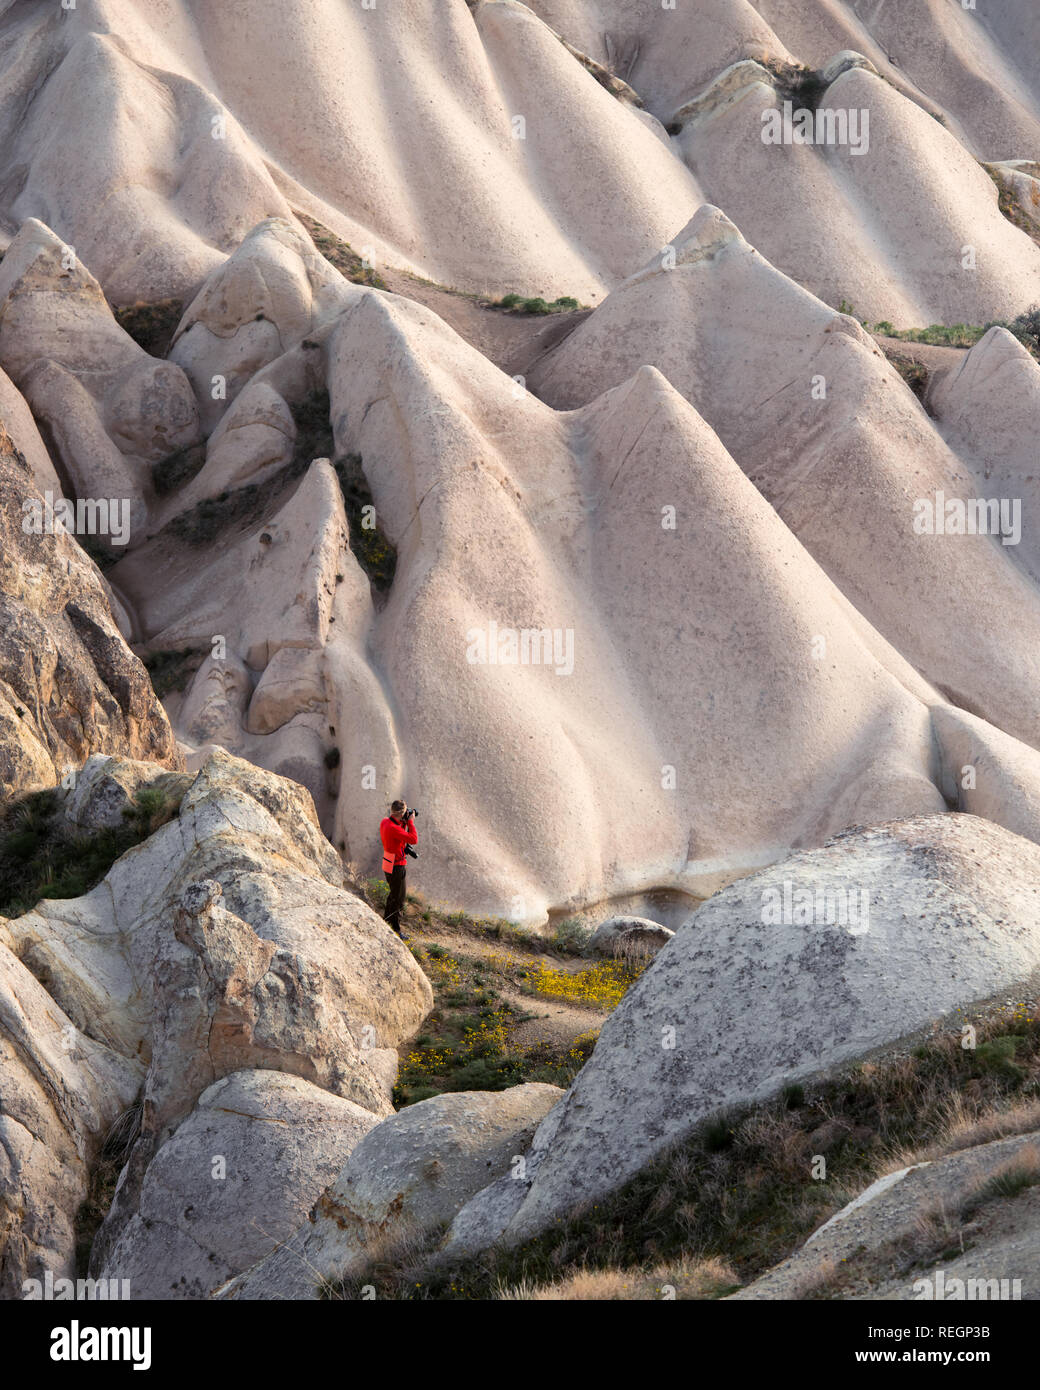 Giornata incredibile in Cappadocia montagne, Turchia. Fotografo in giacca rossa prendendo foto di meravigliose colline. Fotografia di paesaggi Foto Stock